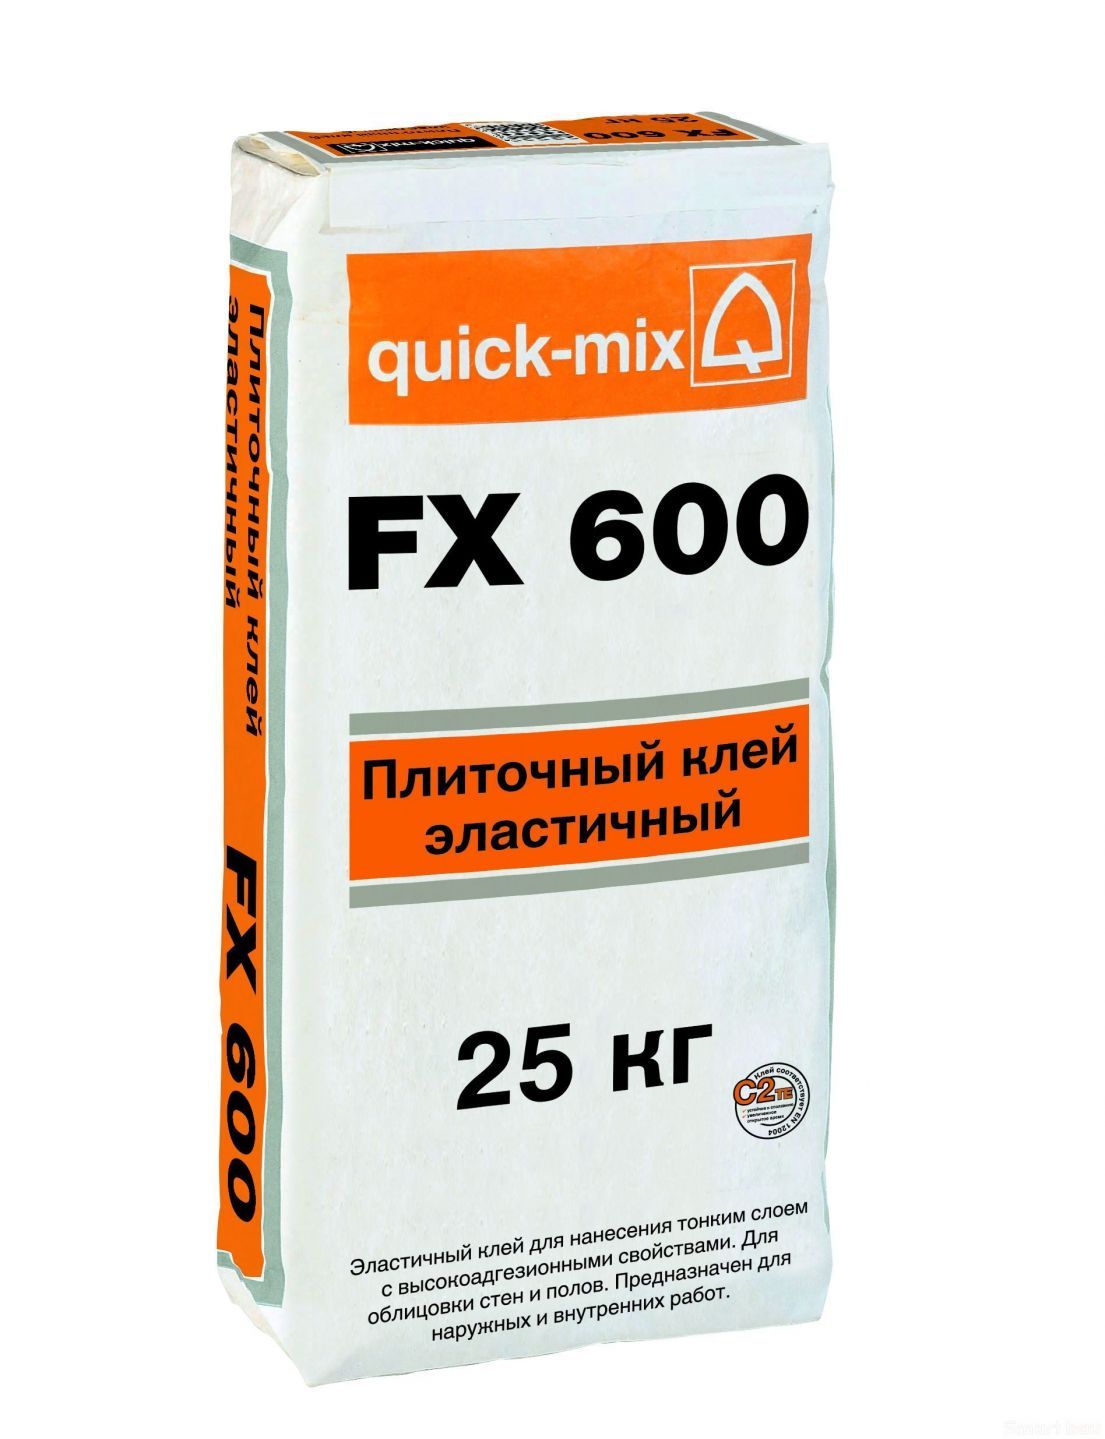 Плиточный клей quick-mix FX 600